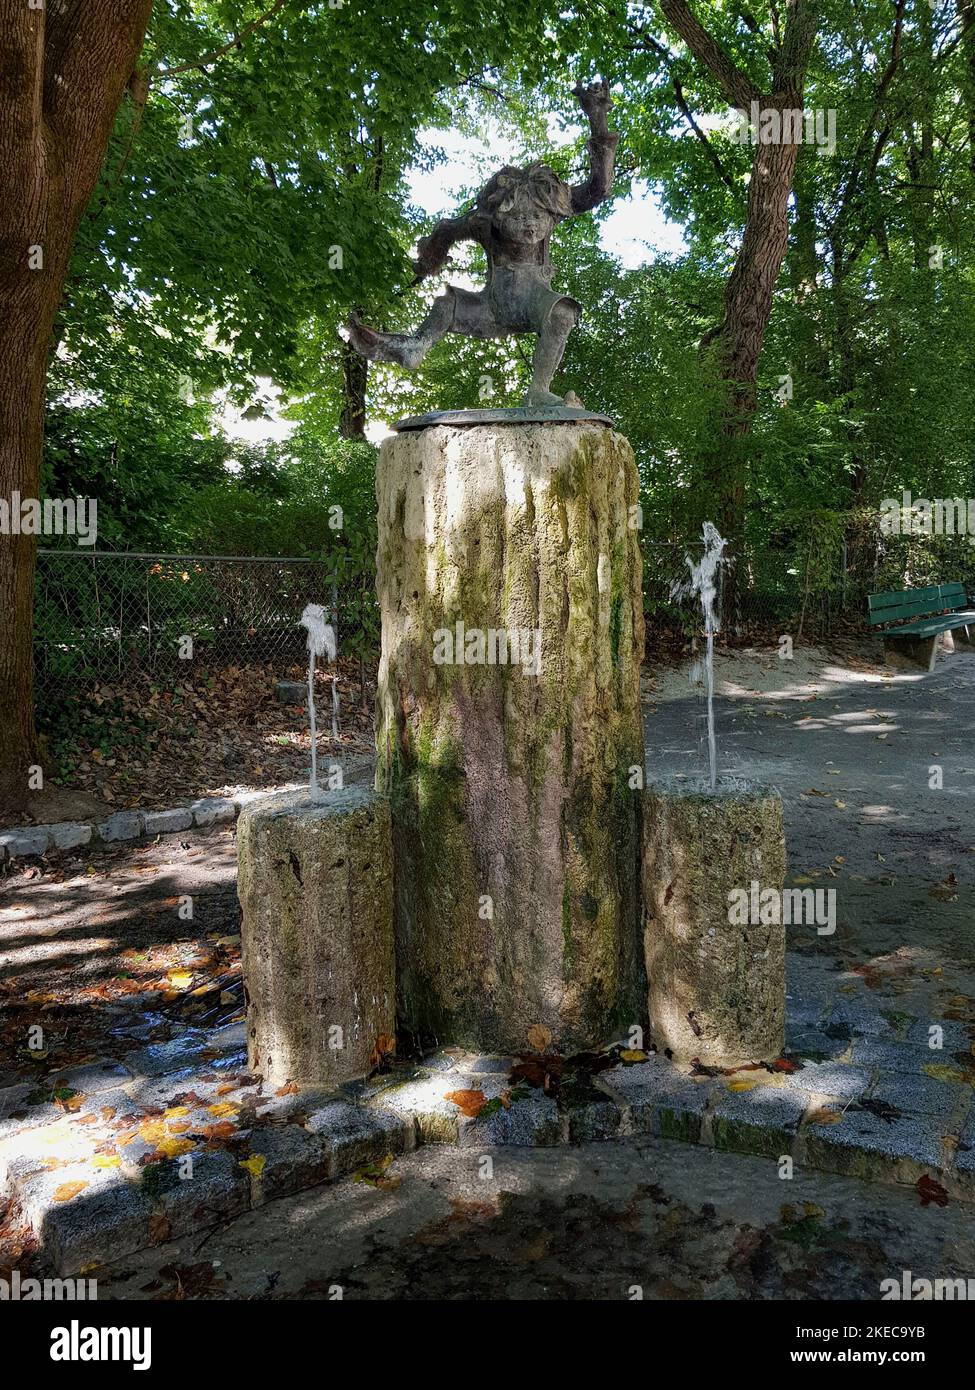 Fuente Pumuckl en Luitpoldpark, Schwabing. Pumuckl, conocido a través de la serie de televisión 'Meister Eder und sein Pumuckl', desde 1962 apareció la serie infantil de televisión de Elli Kaut. Se trata del infantil imp que juega muchos trucos en el Maestro Eder. En 1985, le fue erigido un monumento en forma de fuente. La escultura de bronce fue realizada por el escultor Claus Nageler. Foto de stock